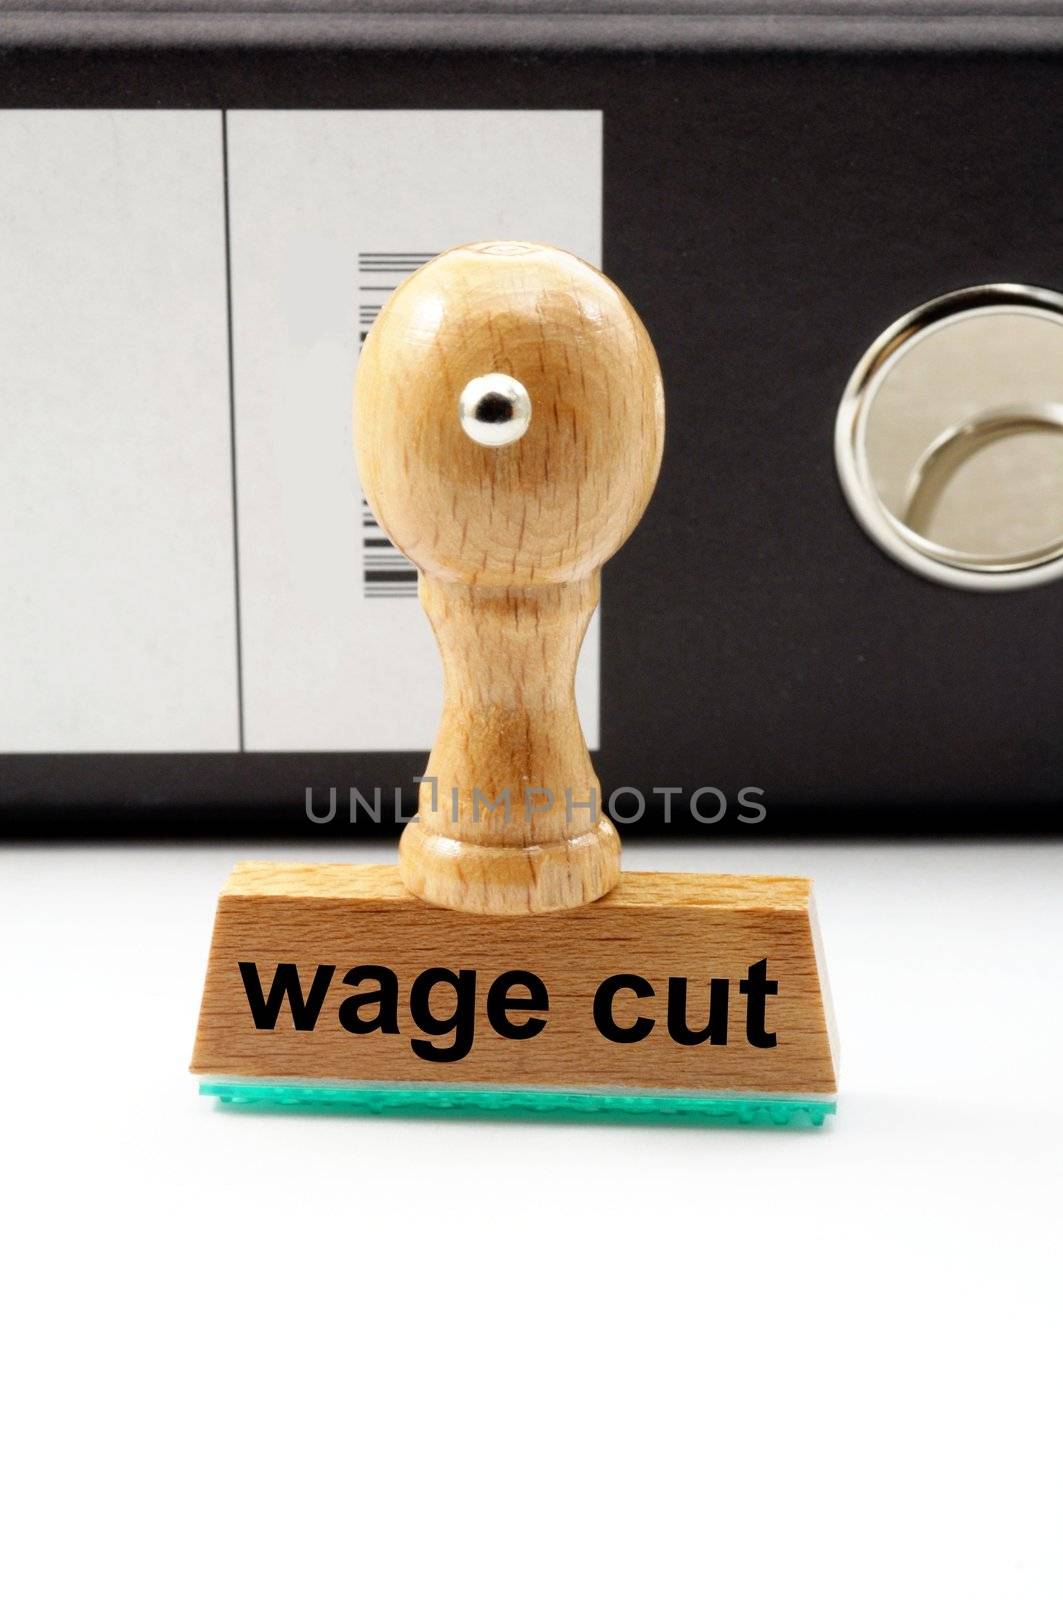 wage cut by gunnar3000